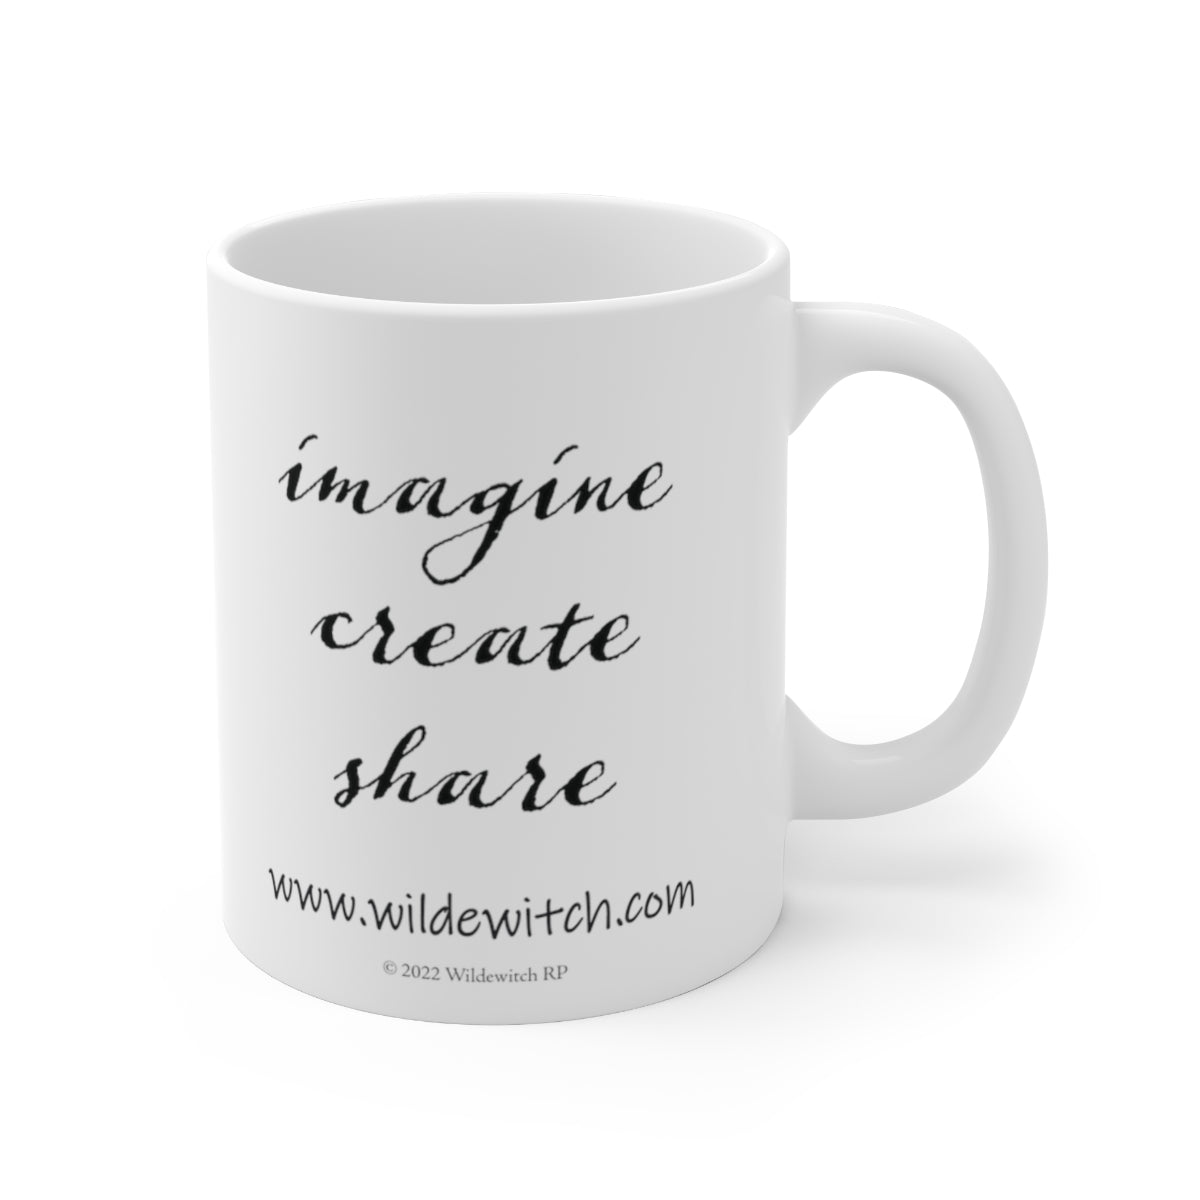 Wildewitch RP Logo Ceramic Mug 11oz